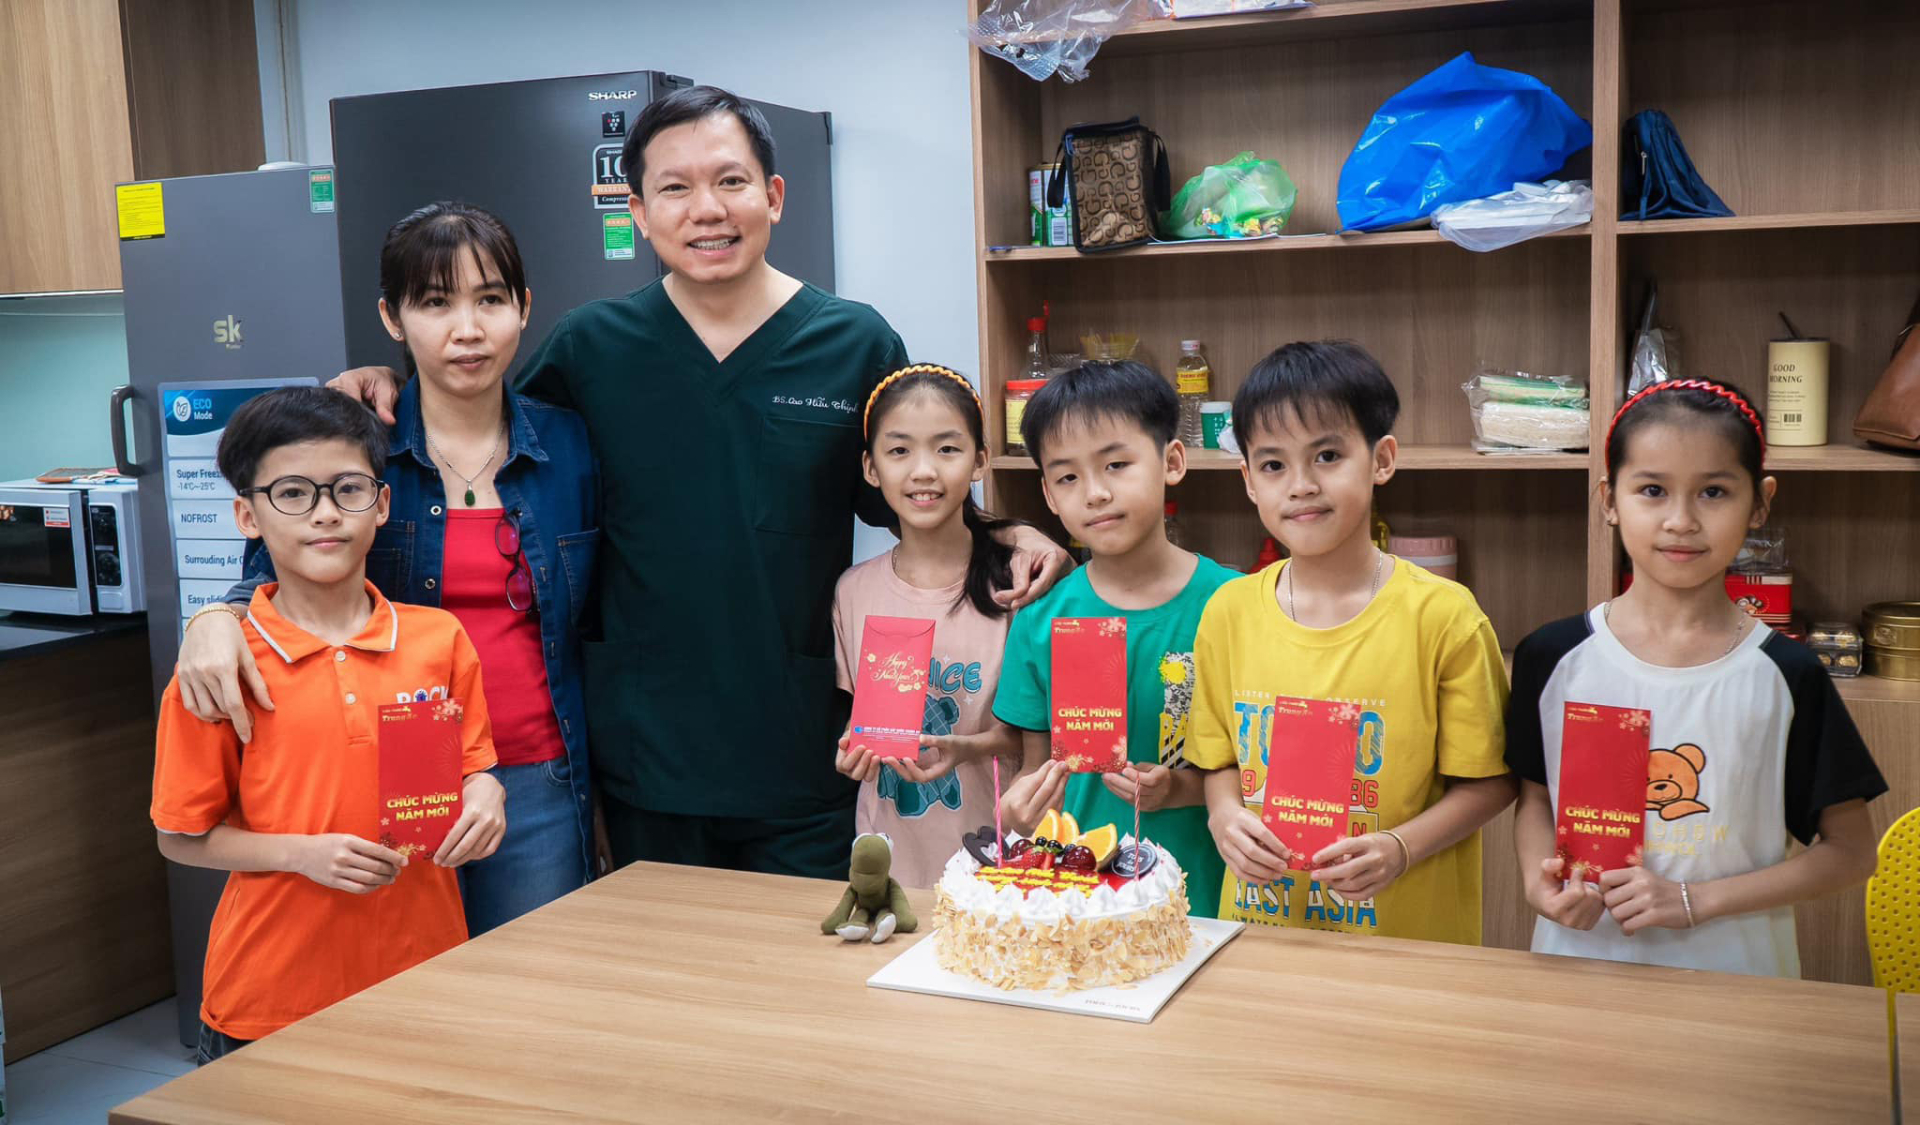 Bác sĩ Cao Hữu Thịnh khoe ảnh hội ngộ 5 em bé sinh 5 cách đây 11 năm. Các bé đều đã lớn.